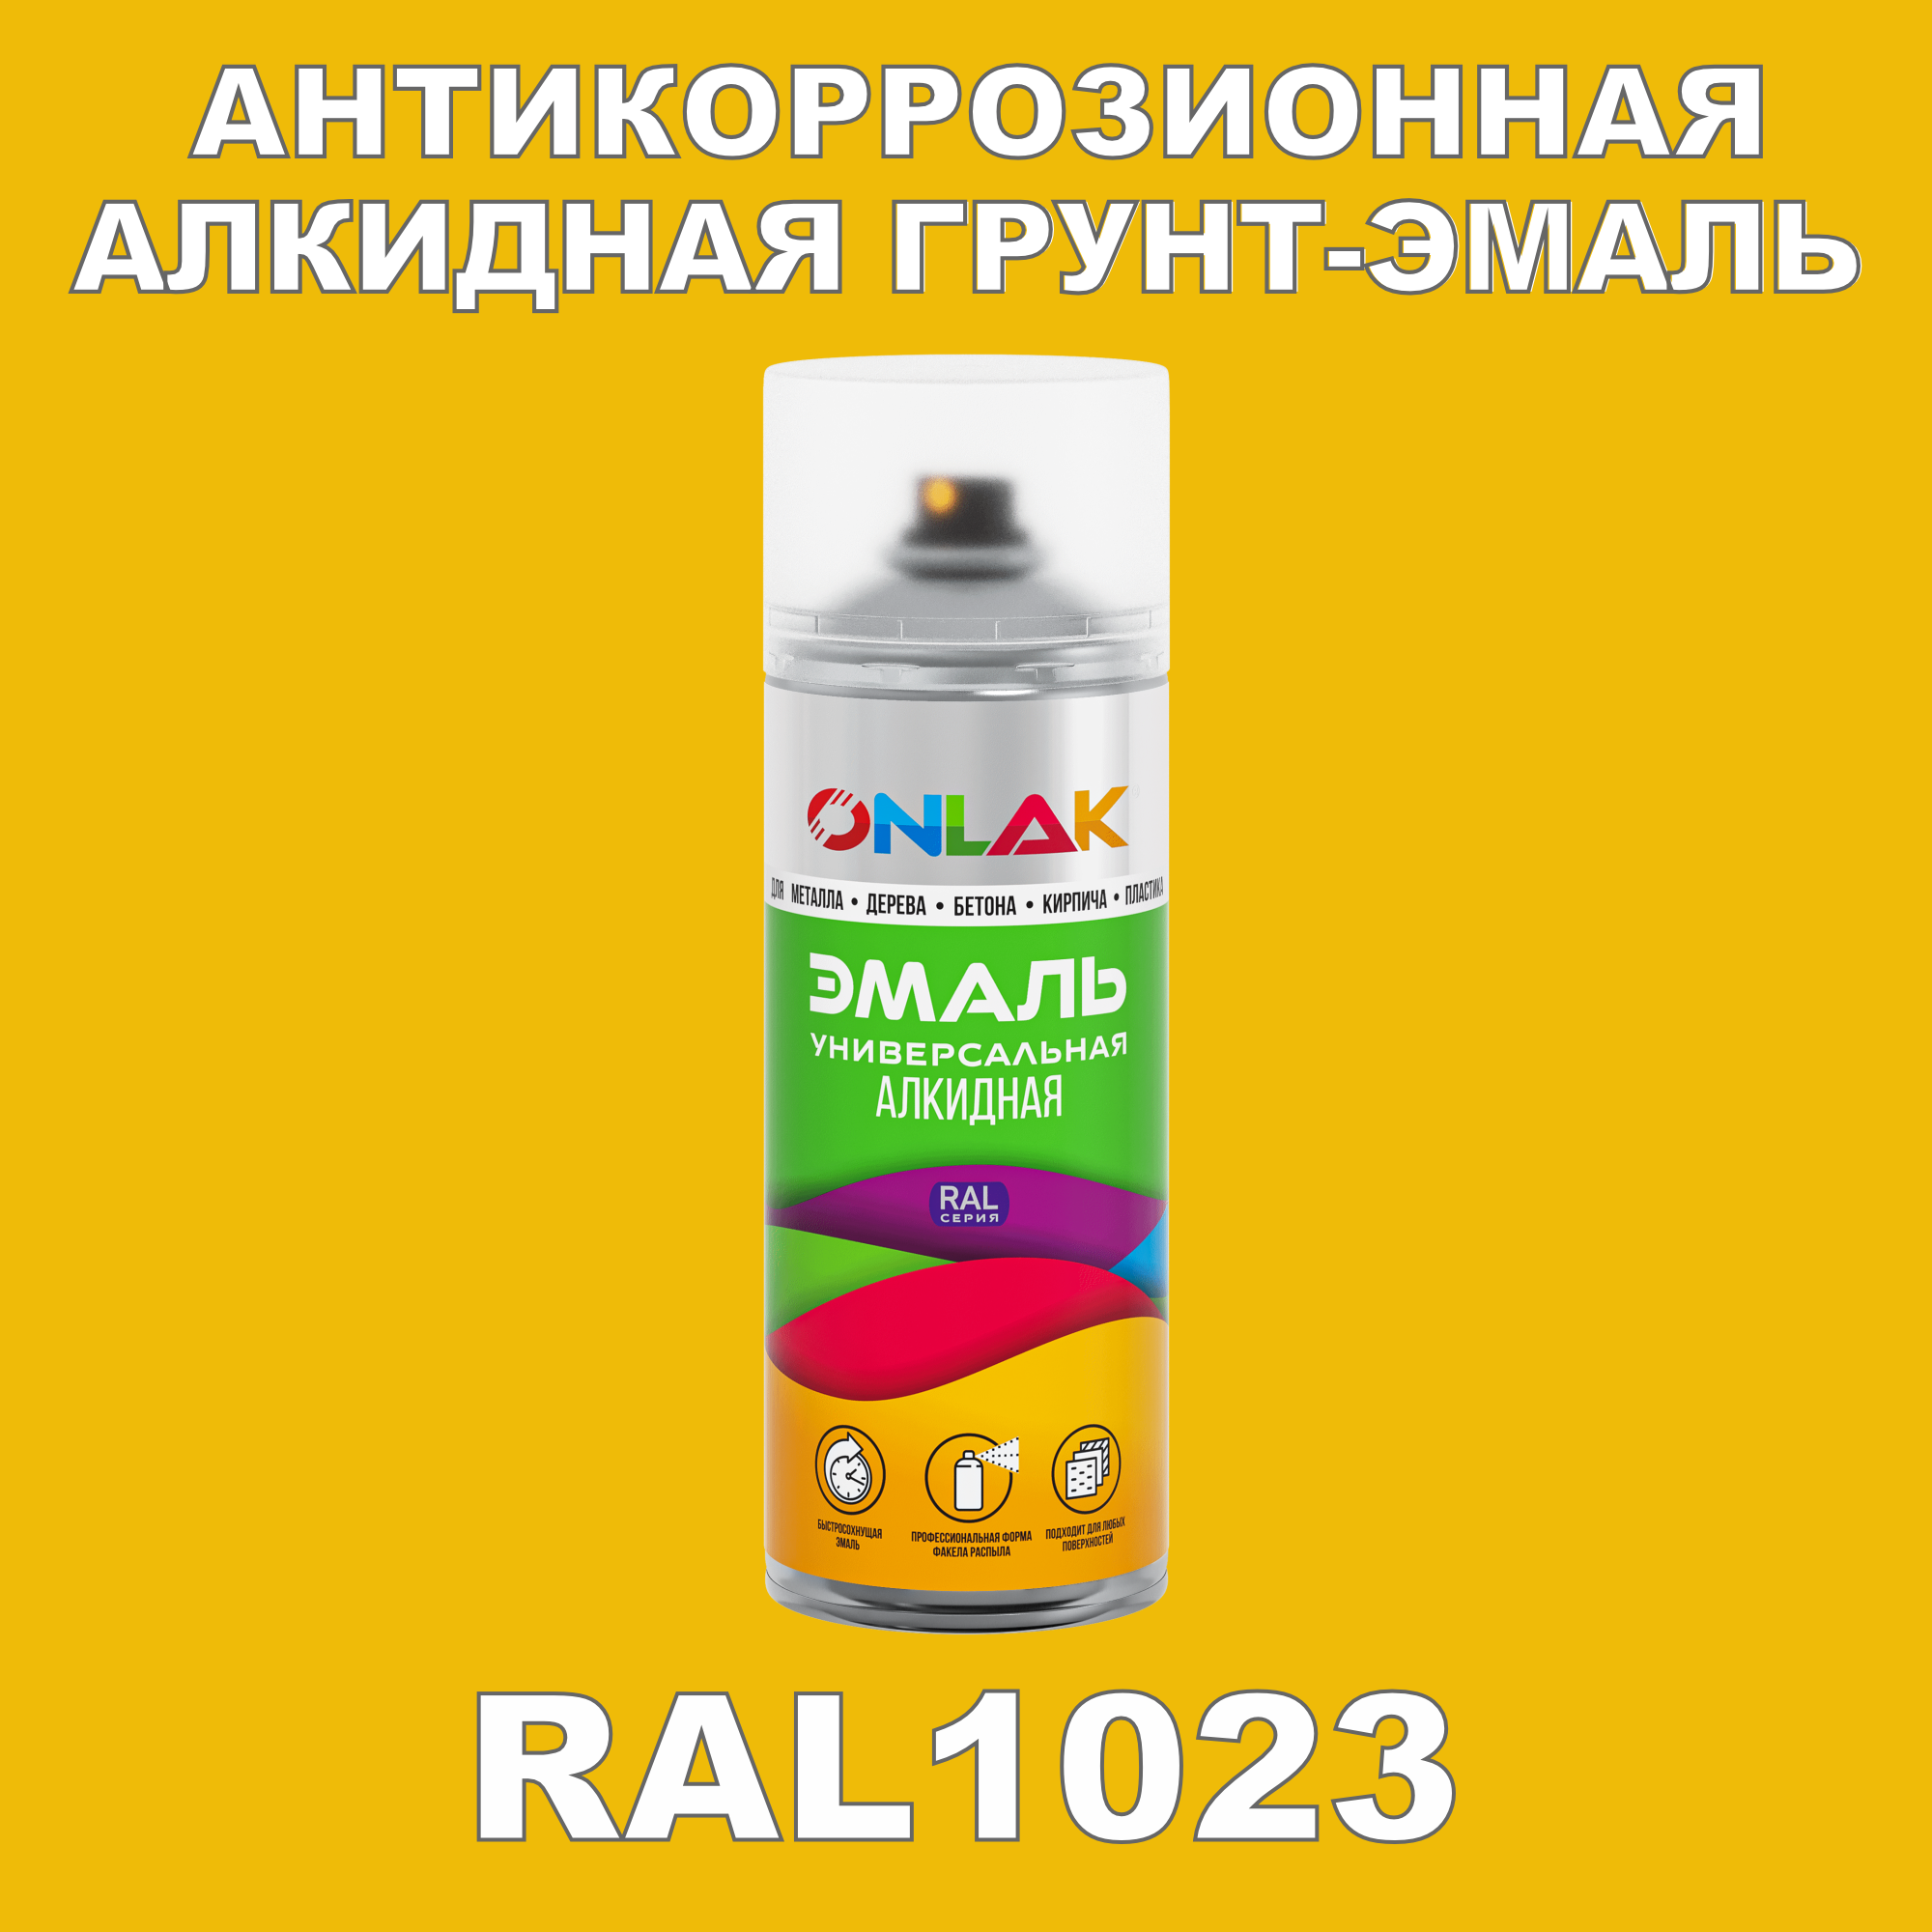 Антикоррозионная грунт-эмаль ONLAK RAL1023 полуматовая для металла и защиты от ржавчины